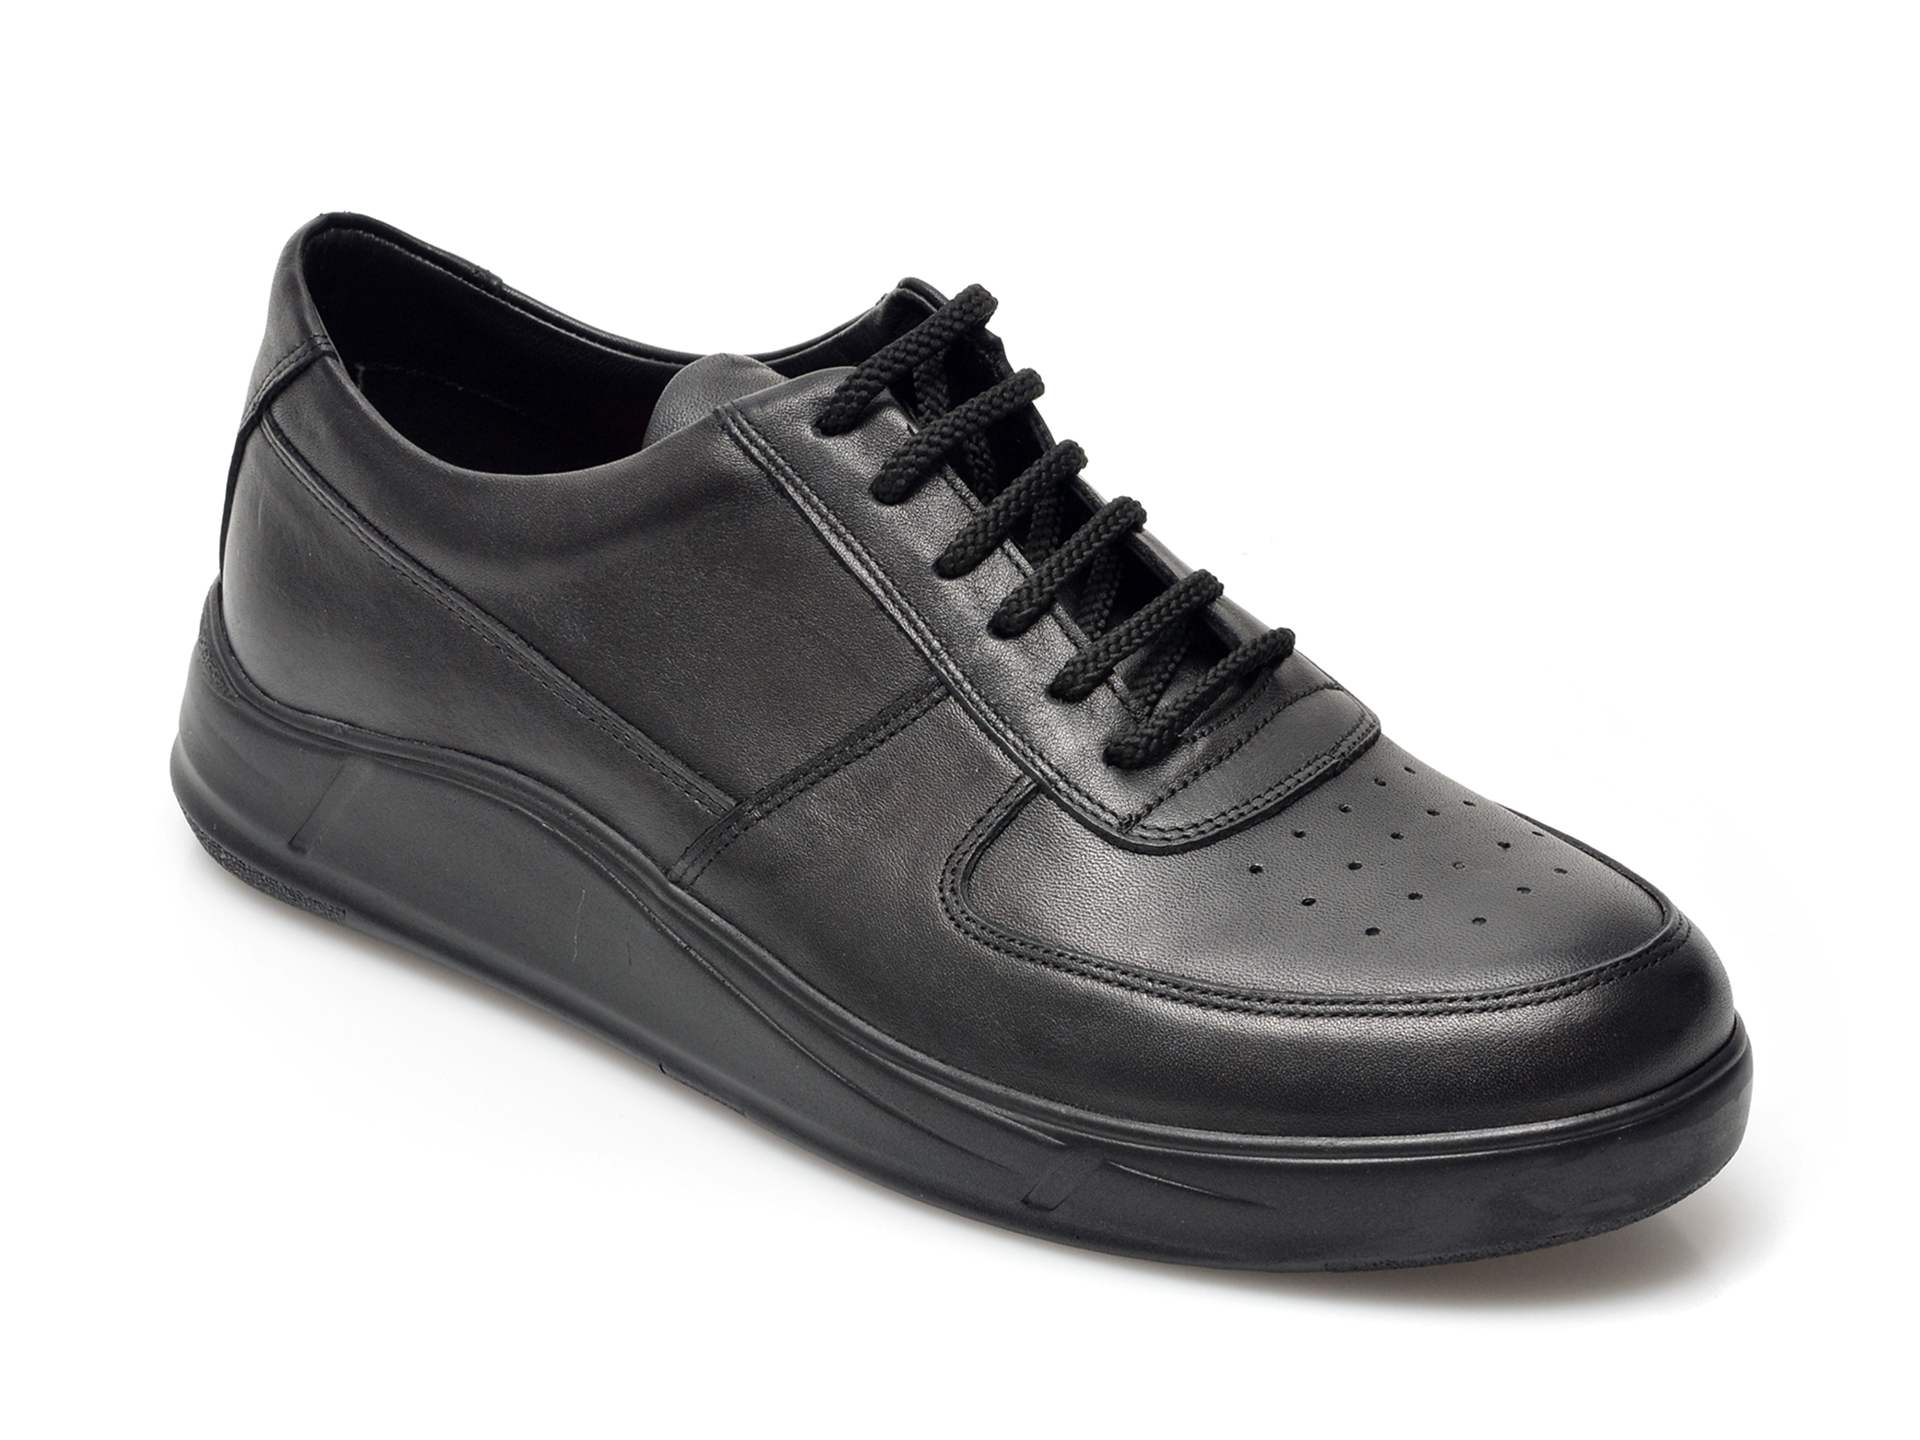 Pantofi OTTER negri, 20552, din piele naturala 2022 ❤️ Pret Super Black Friday otter.ro imagine noua 2022